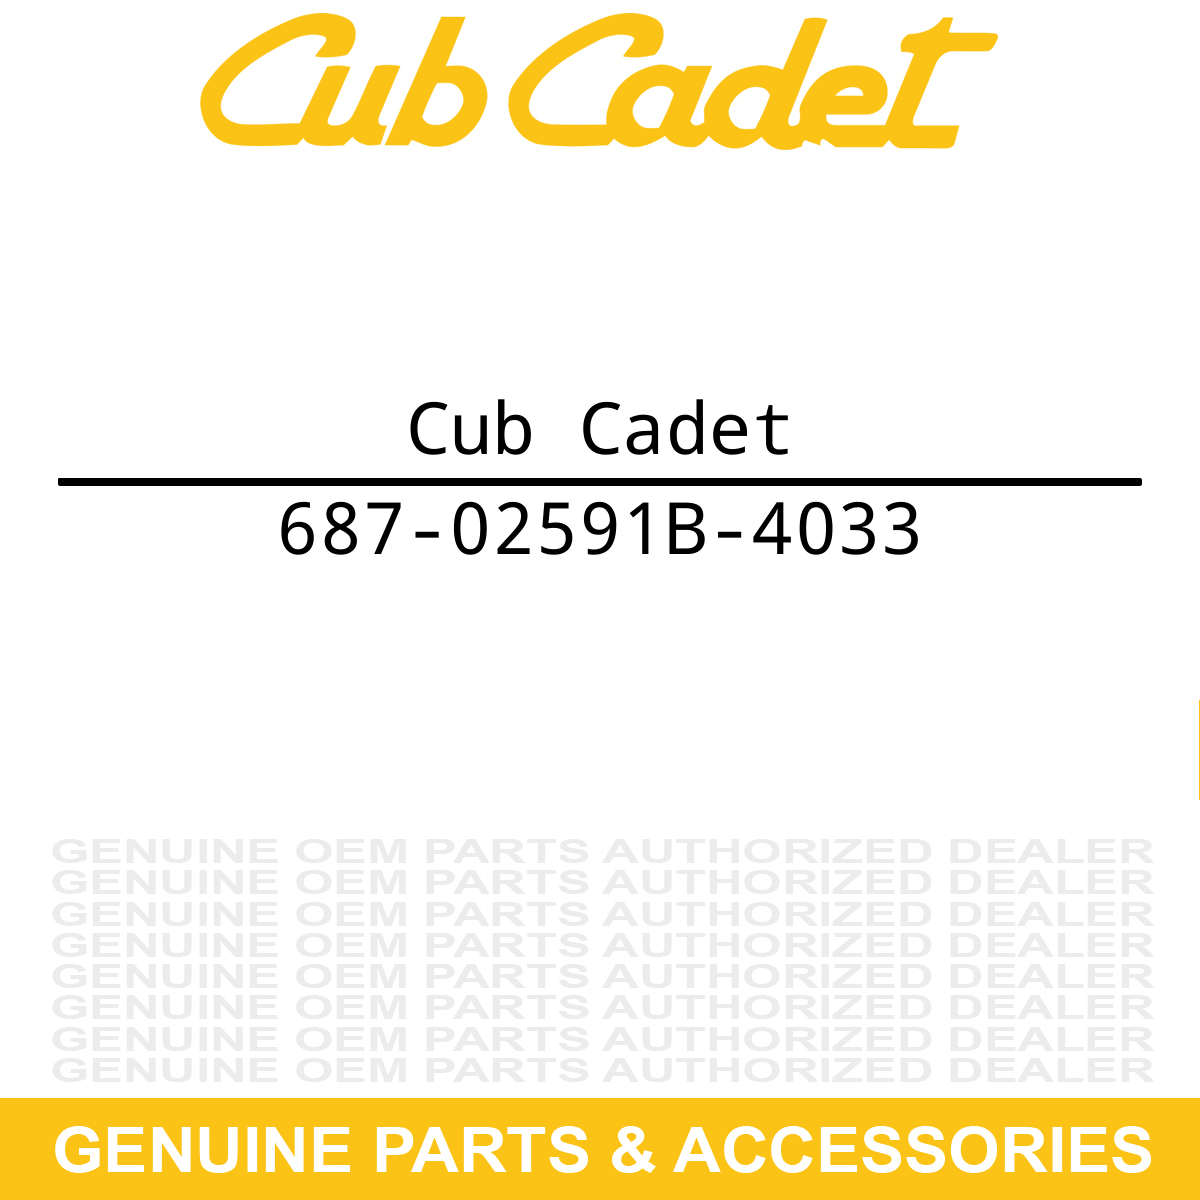 Cub Cadet 753-06118 Grass Bag 2.6 Bushel | Mow The Lawn